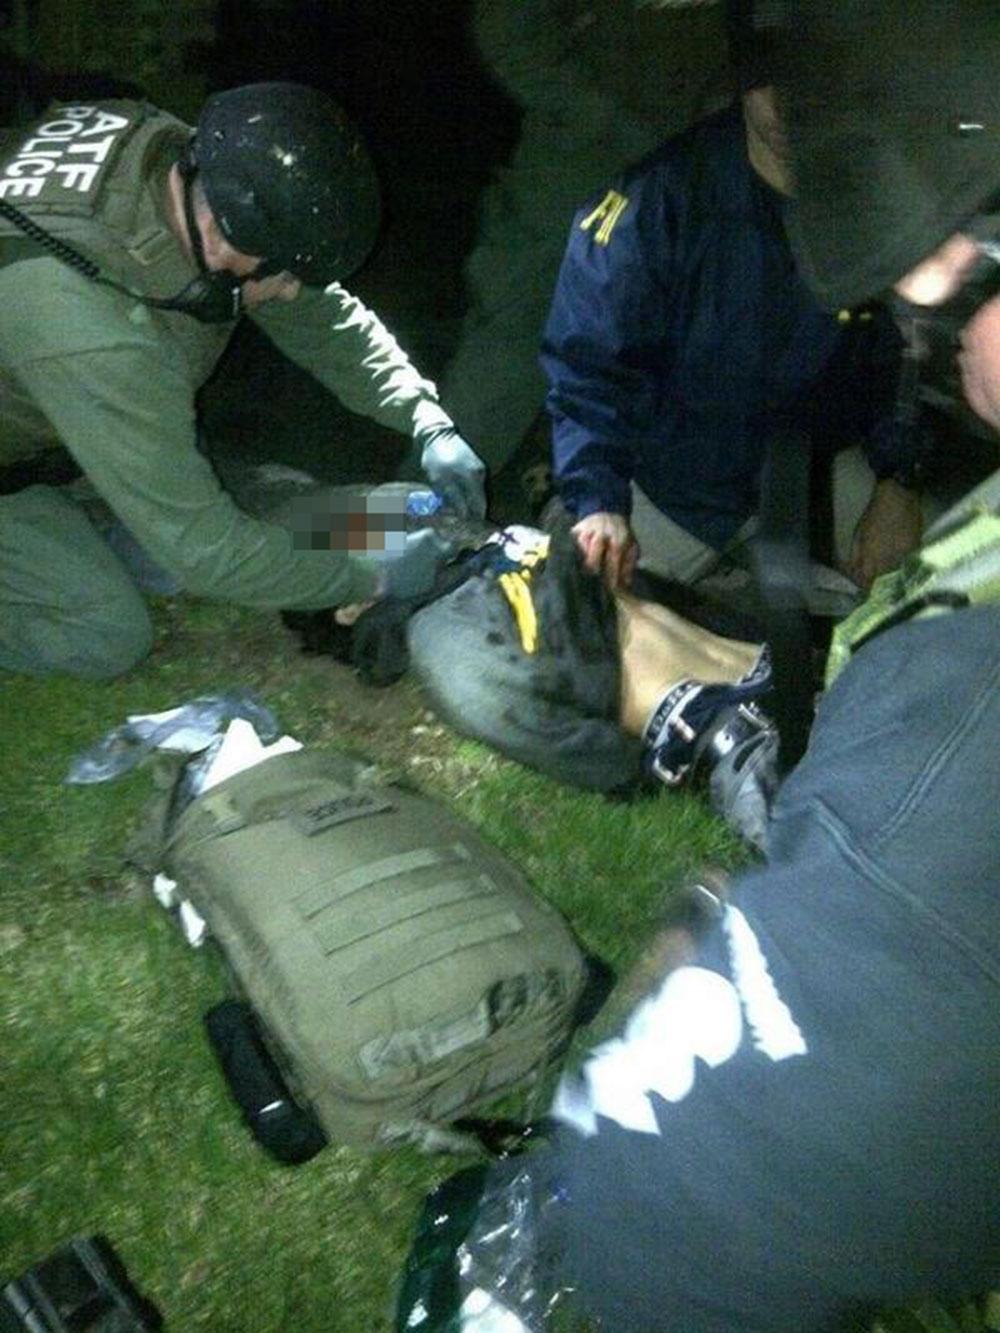 Dzjochar Tsarnajev strax efter gripandet. Han fick svåra skador i samband med insatsen.